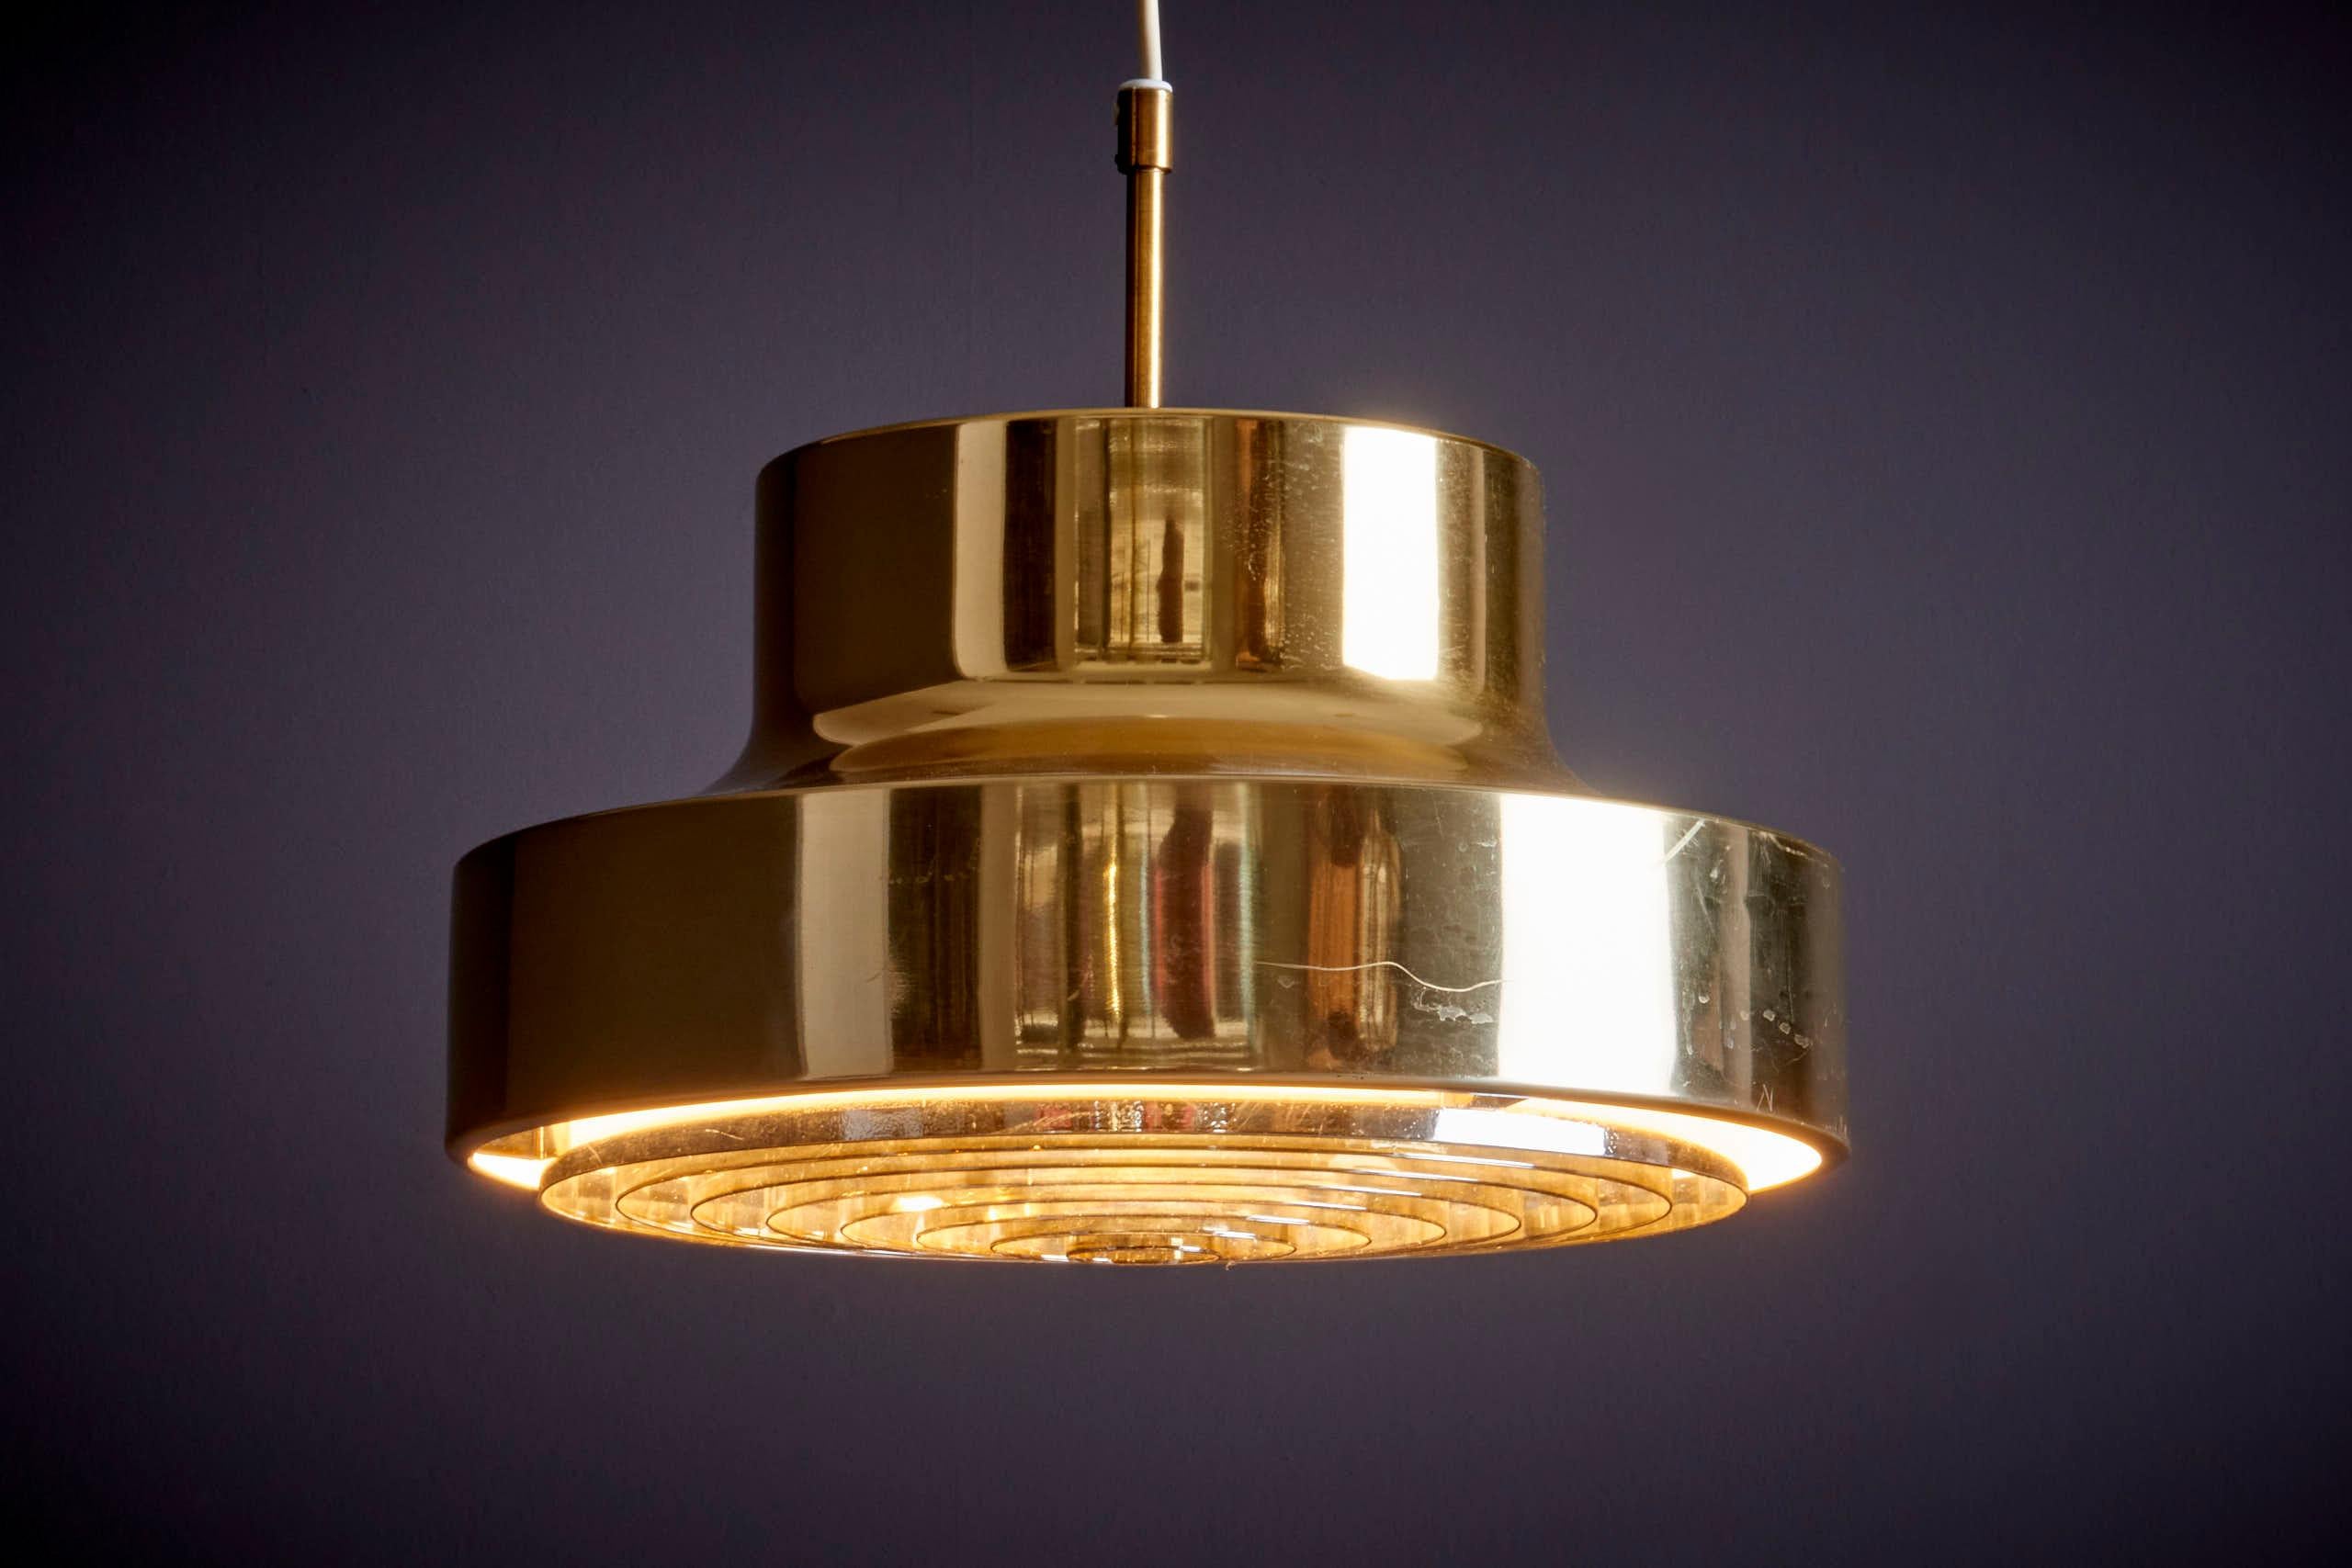 Lampe suspendue Belysning de Falkenbergs, Suède - années 1960 en bon état d'origine. Remarque : la lampe doit être installée par un professionnel conformément aux exigences locales.